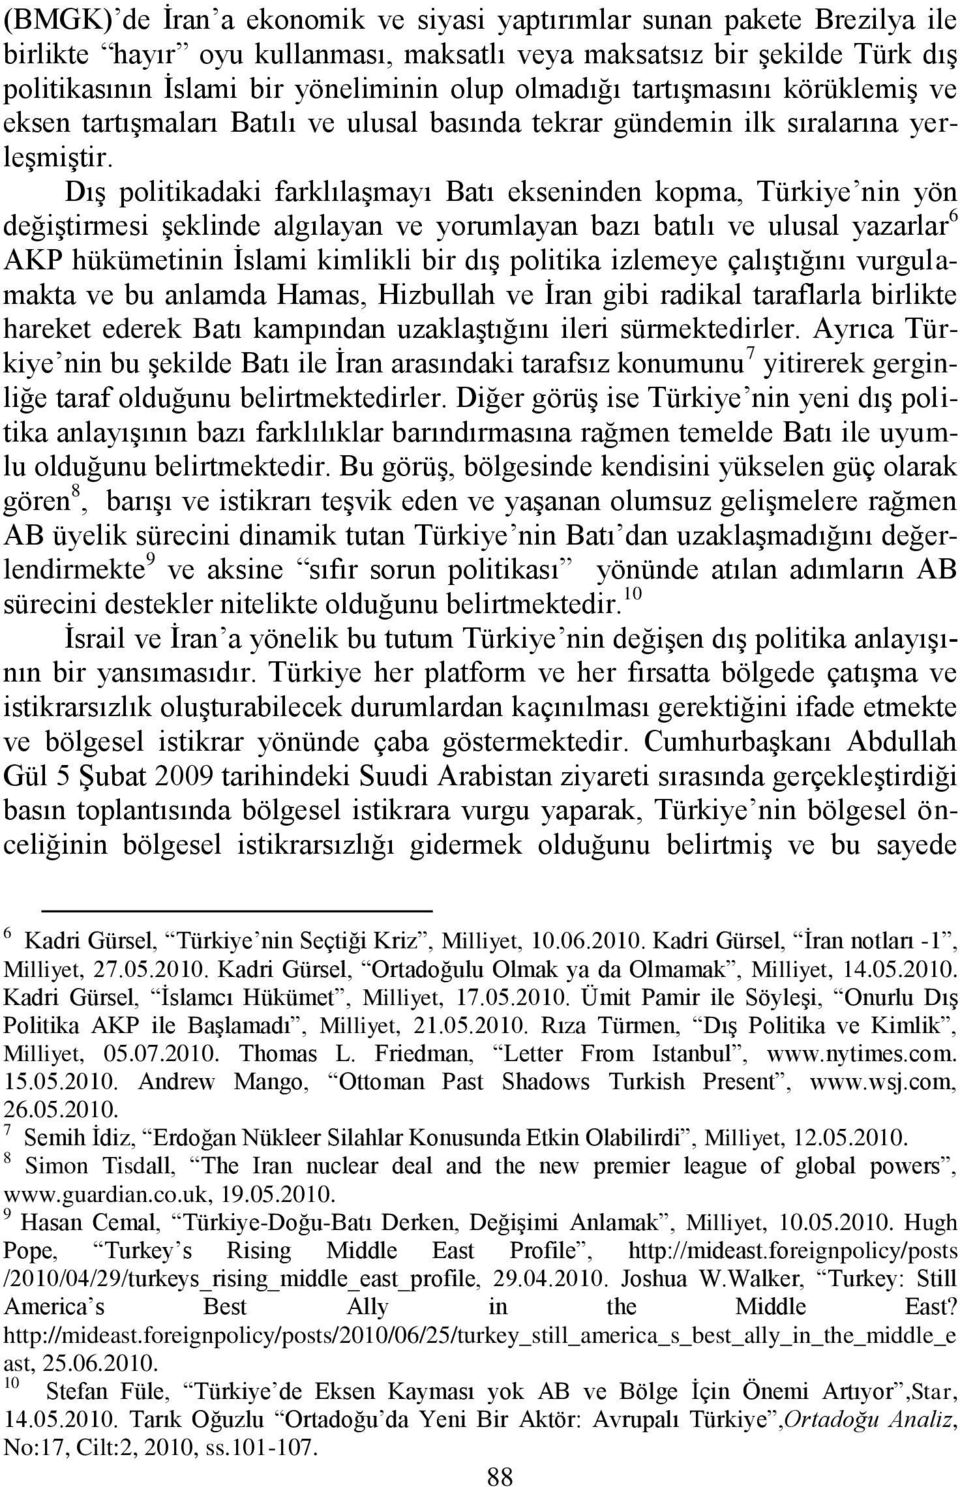 DıĢ politikadaki farklılaģmayı Batı ekseninden kopma, Türkiye nin yön değiģtirmesi Ģeklinde algılayan ve yorumlayan bazı batılı ve ulusal yazarlar 6 AKP hükümetinin Ġslami kimlikli bir dıģ politika